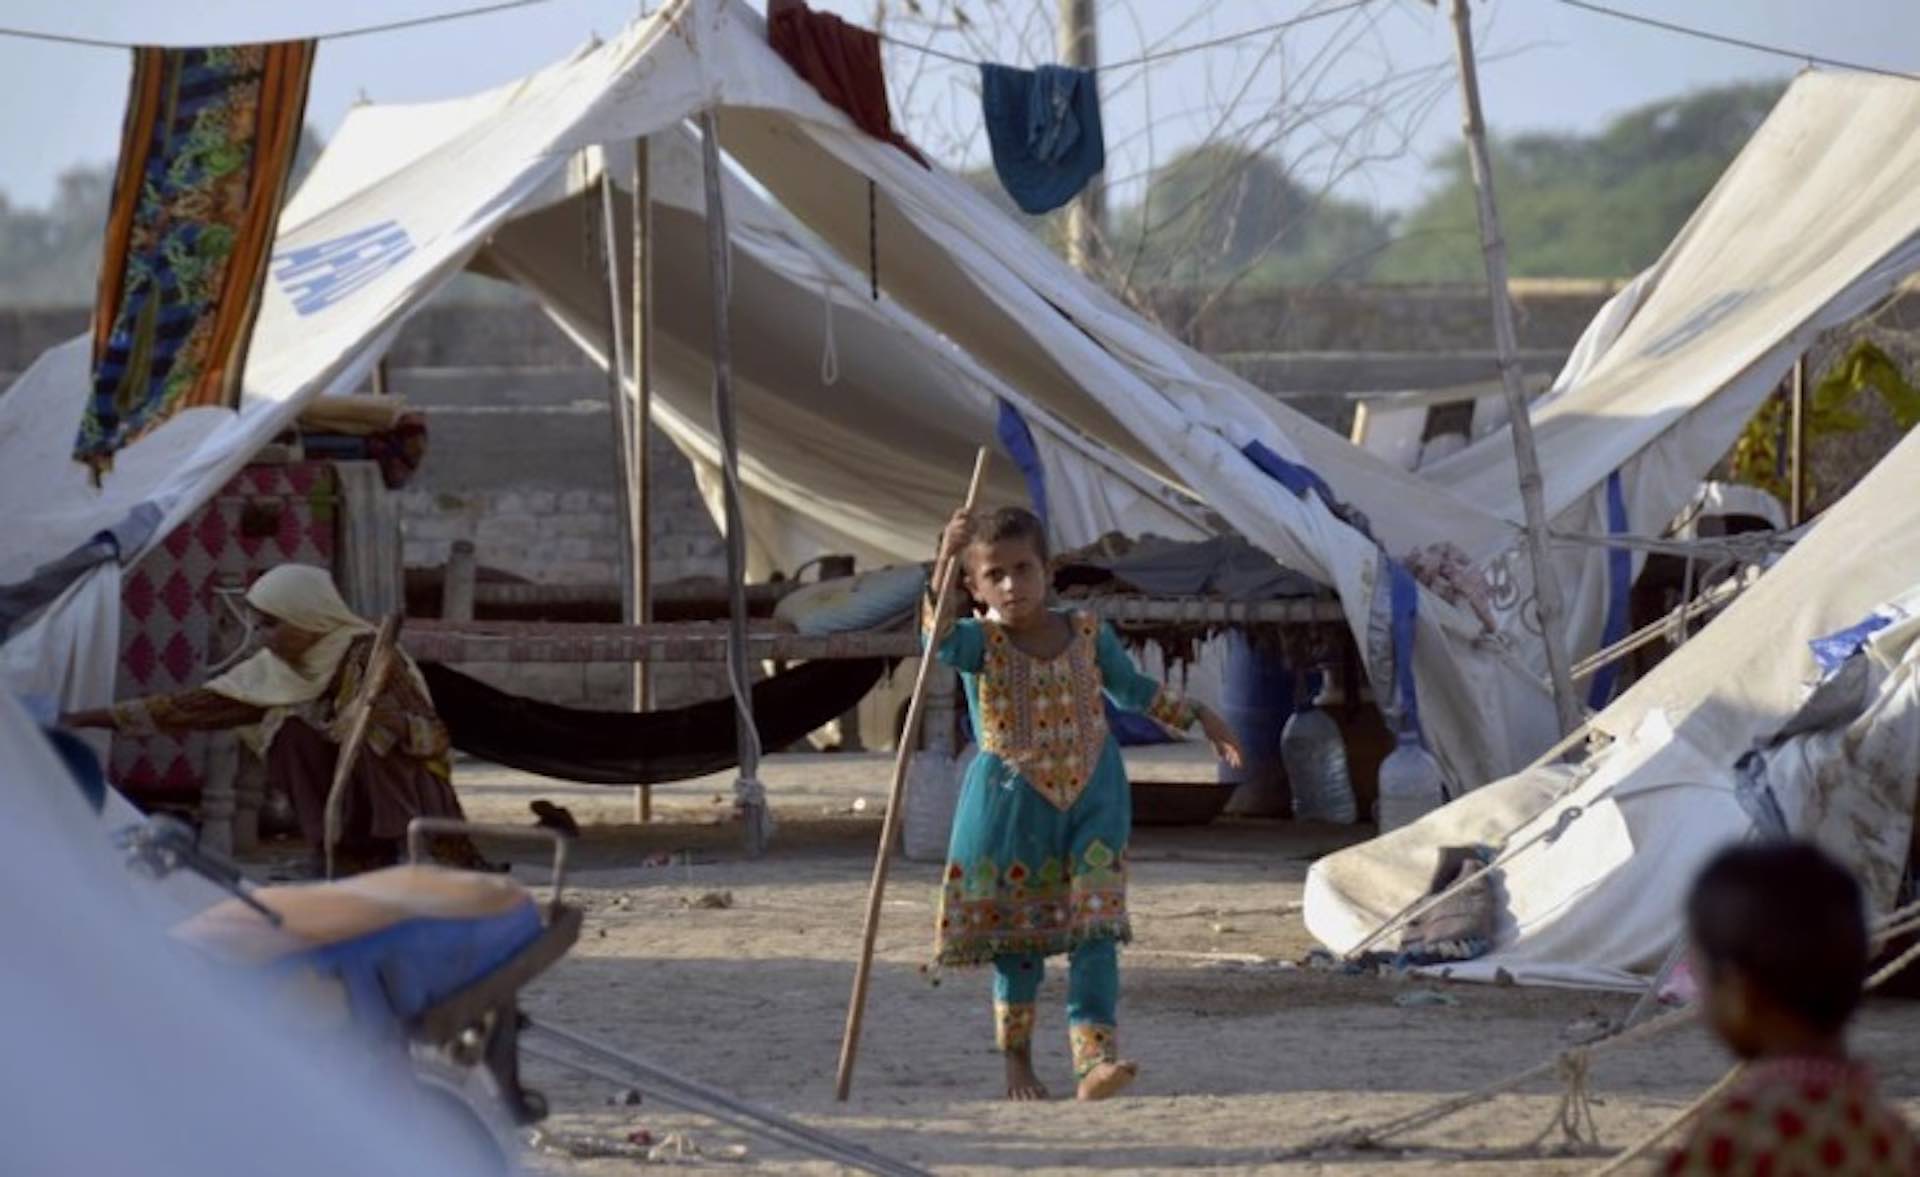 Pakistan flood victims face food crisis - UN